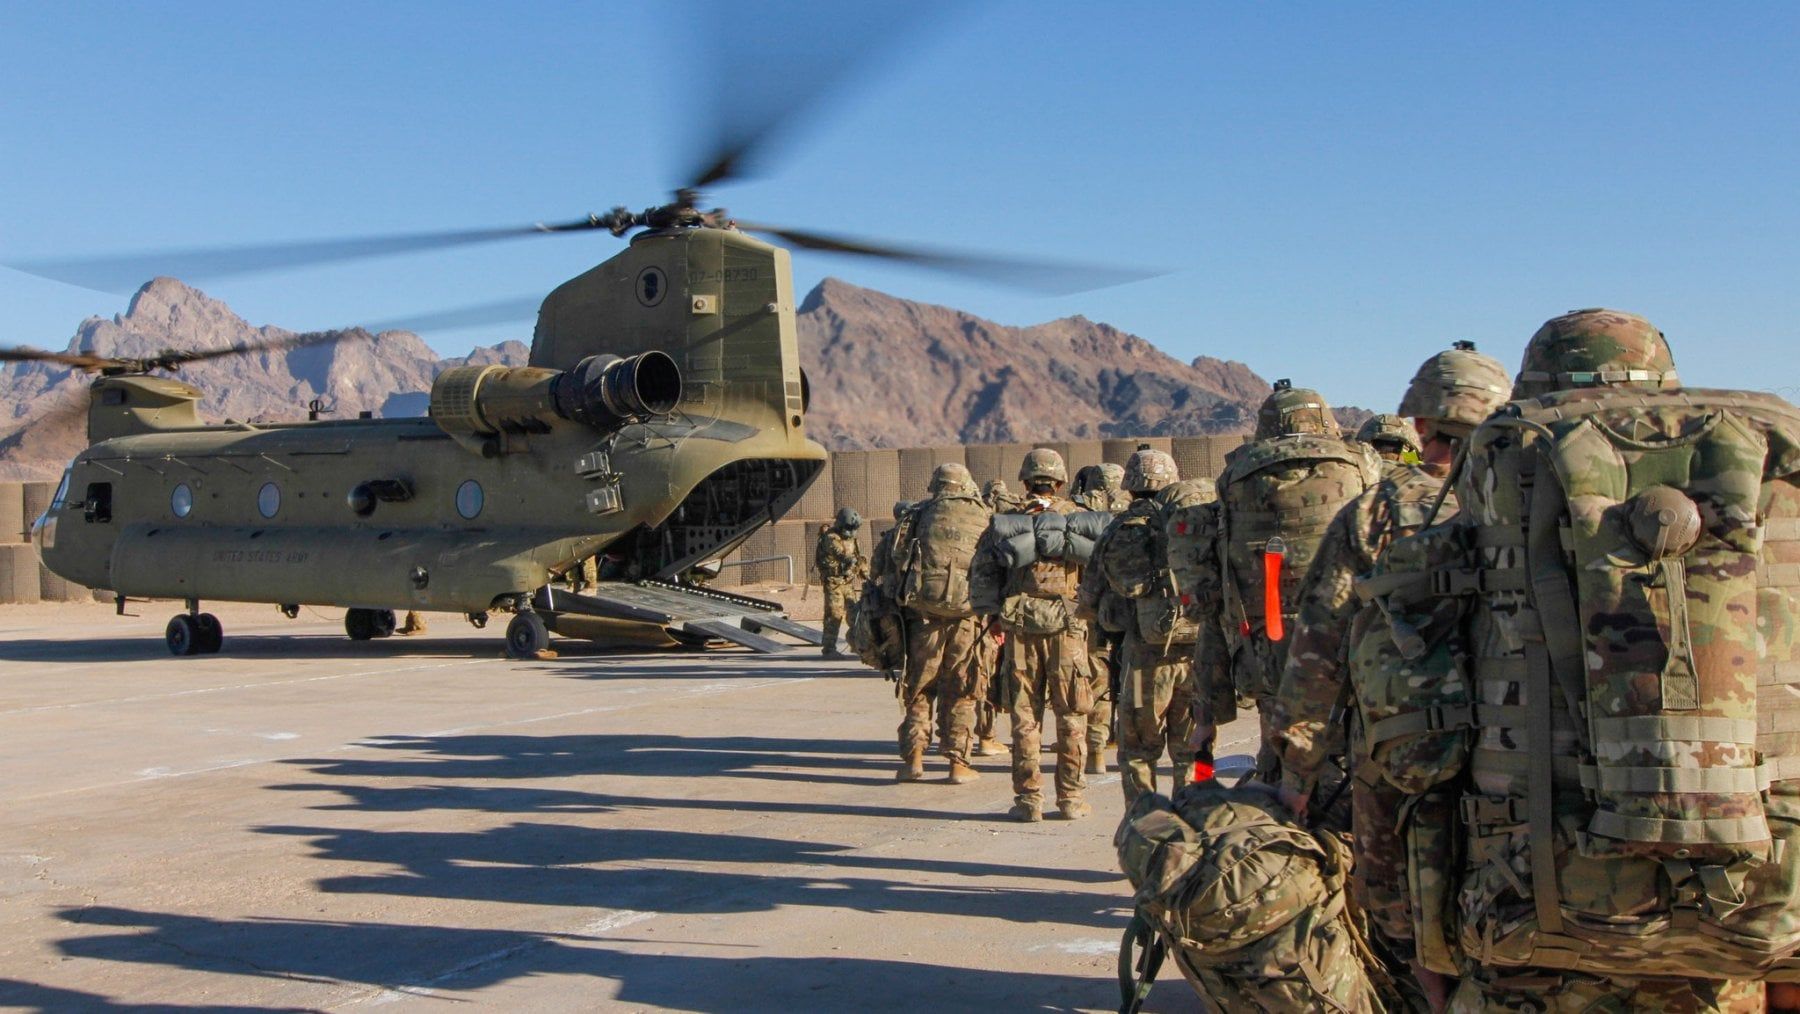 مكافحة الإرهاب ـ واقع الإرهاب والتطرف في أفغانستان بعد الانسحاب الأمريكي  